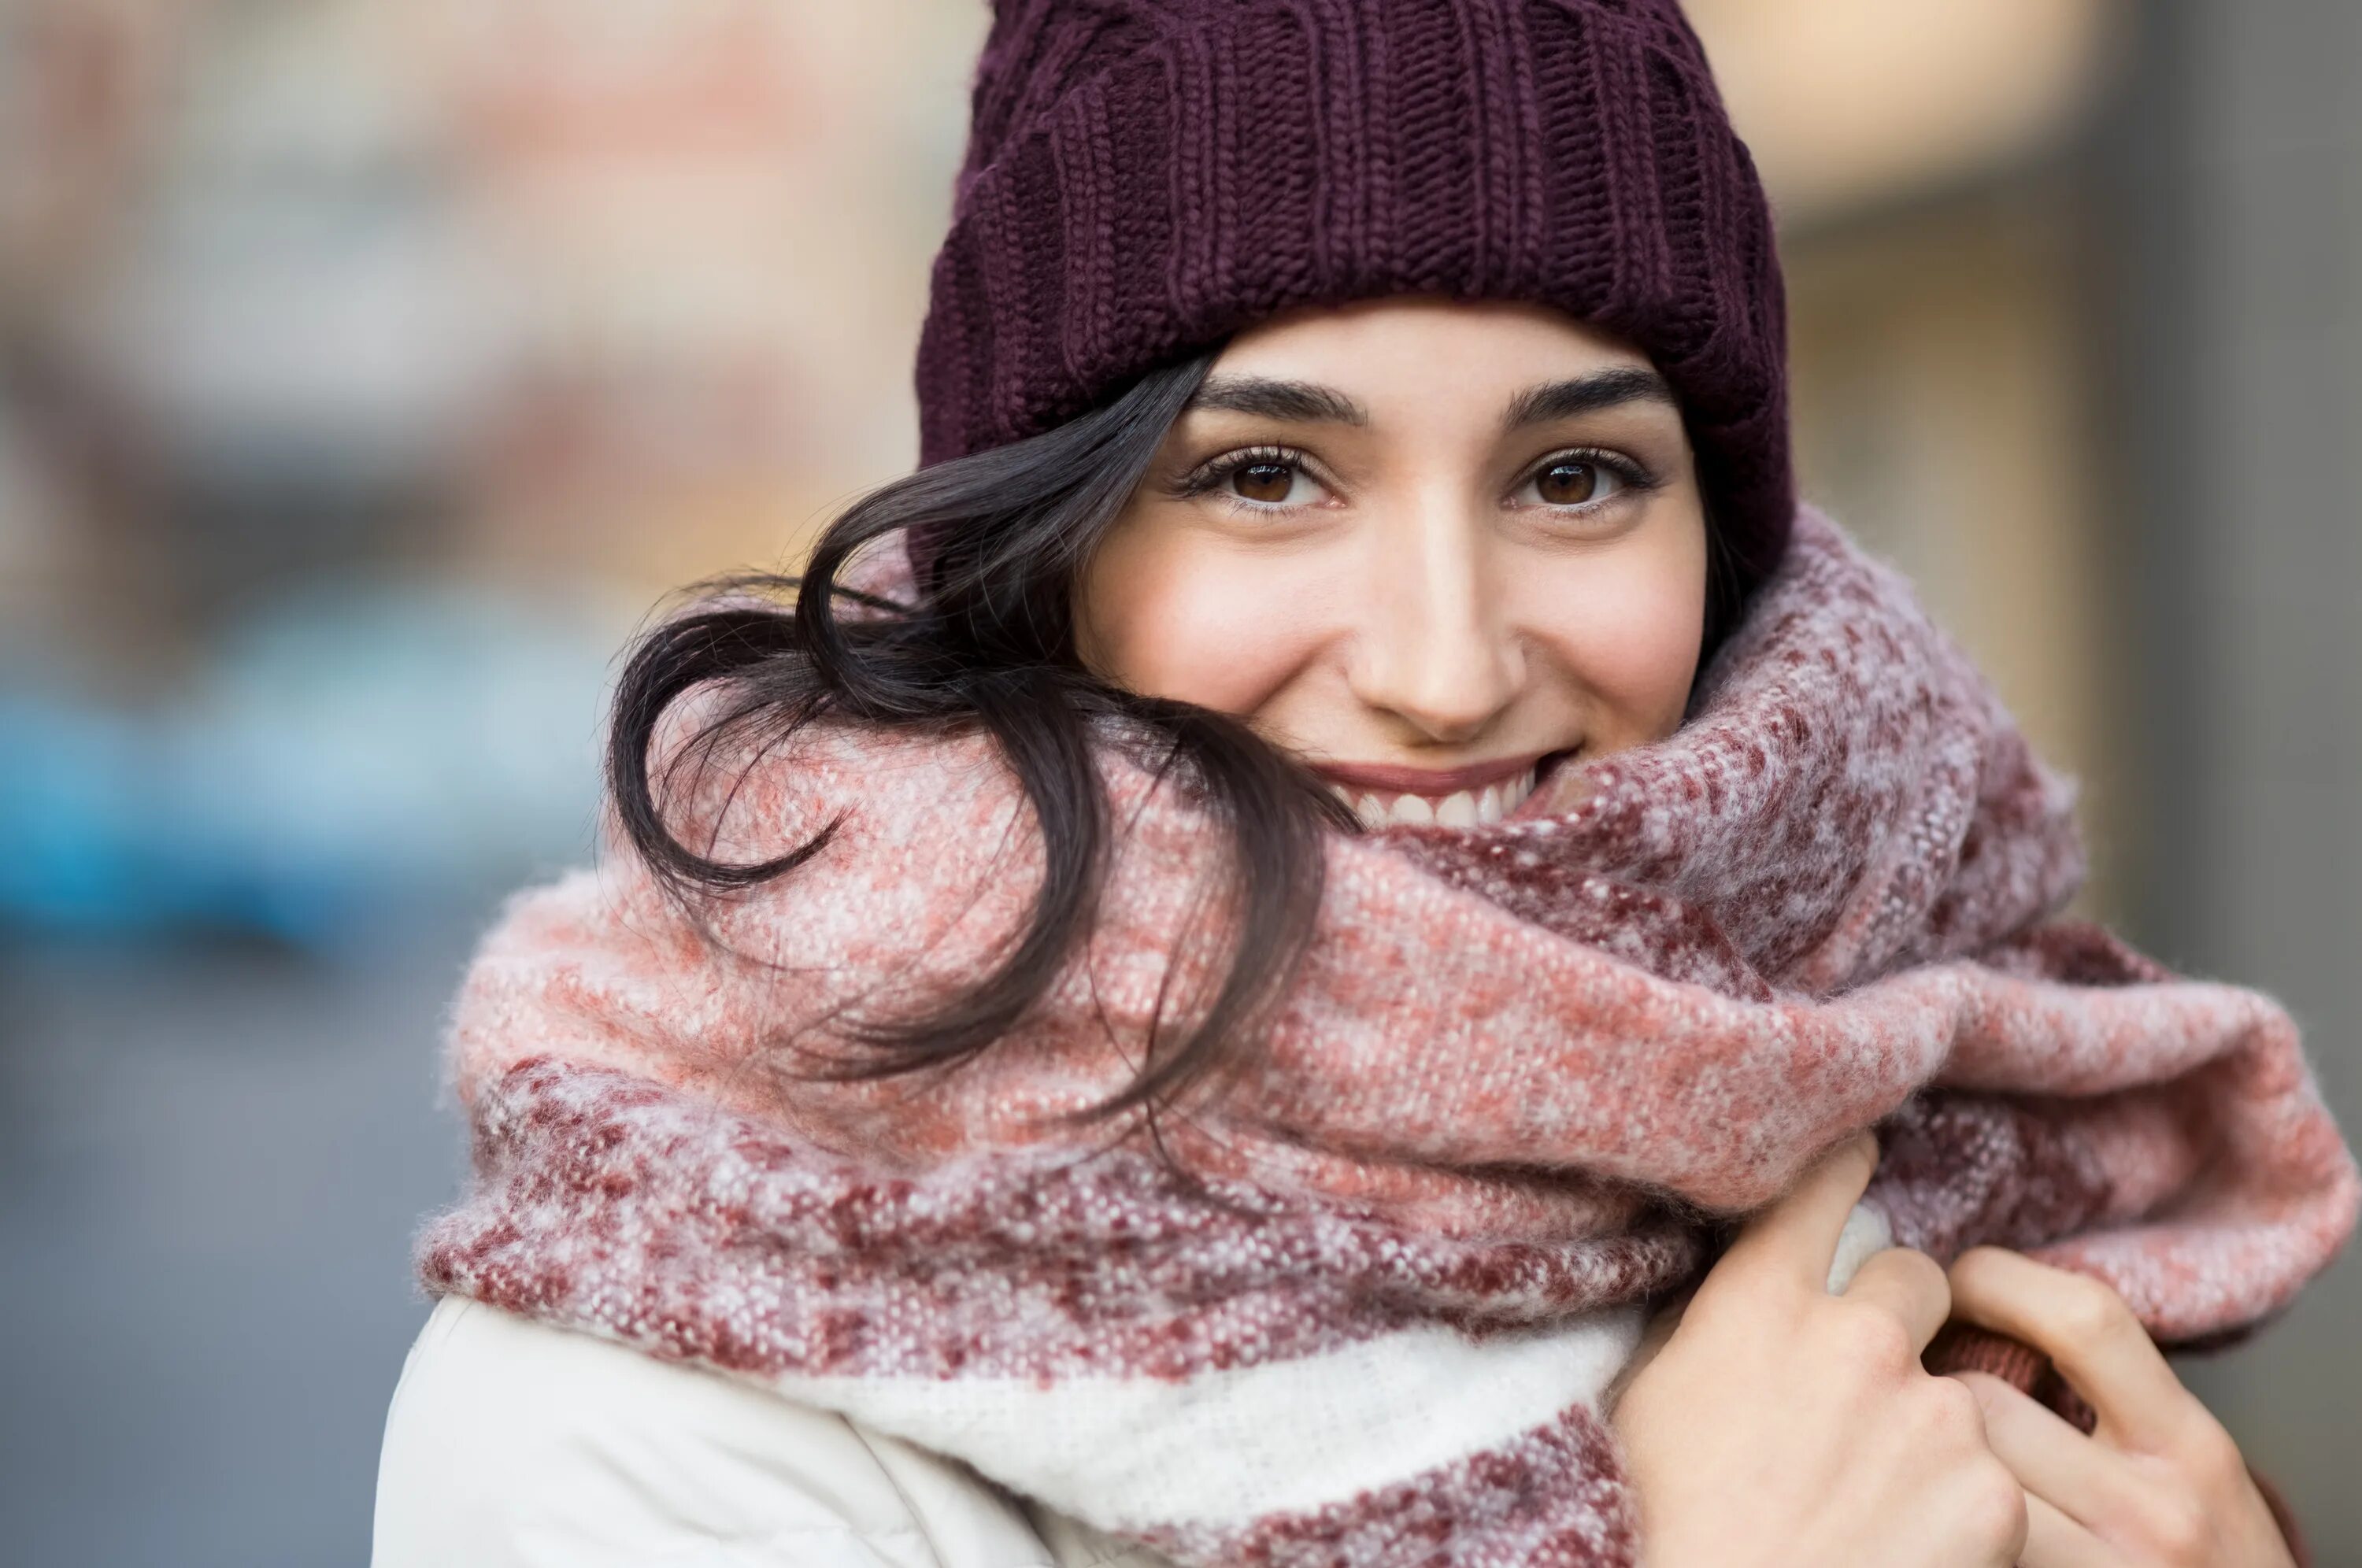 Теплая одежда зимой. Девушка в шарфе зимой. Девушка в шапке и шарфе. Шапка шарф. Девушка в шапке зимой.